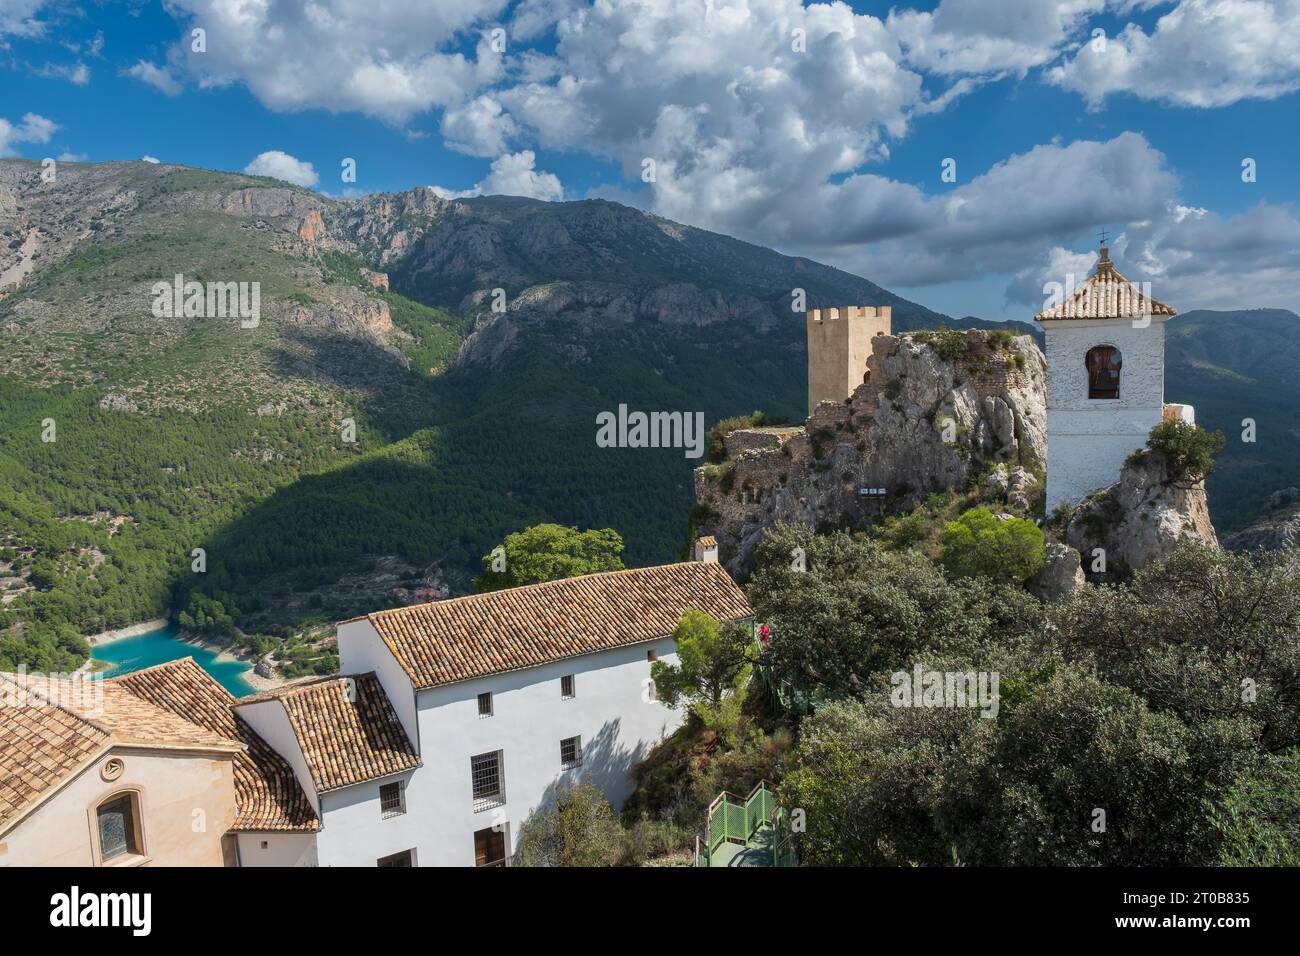 Il villaggio di El Castell de Guadalest è considerato il villaggio più visitato della provincia spagnola di Alicante. Foto Stock